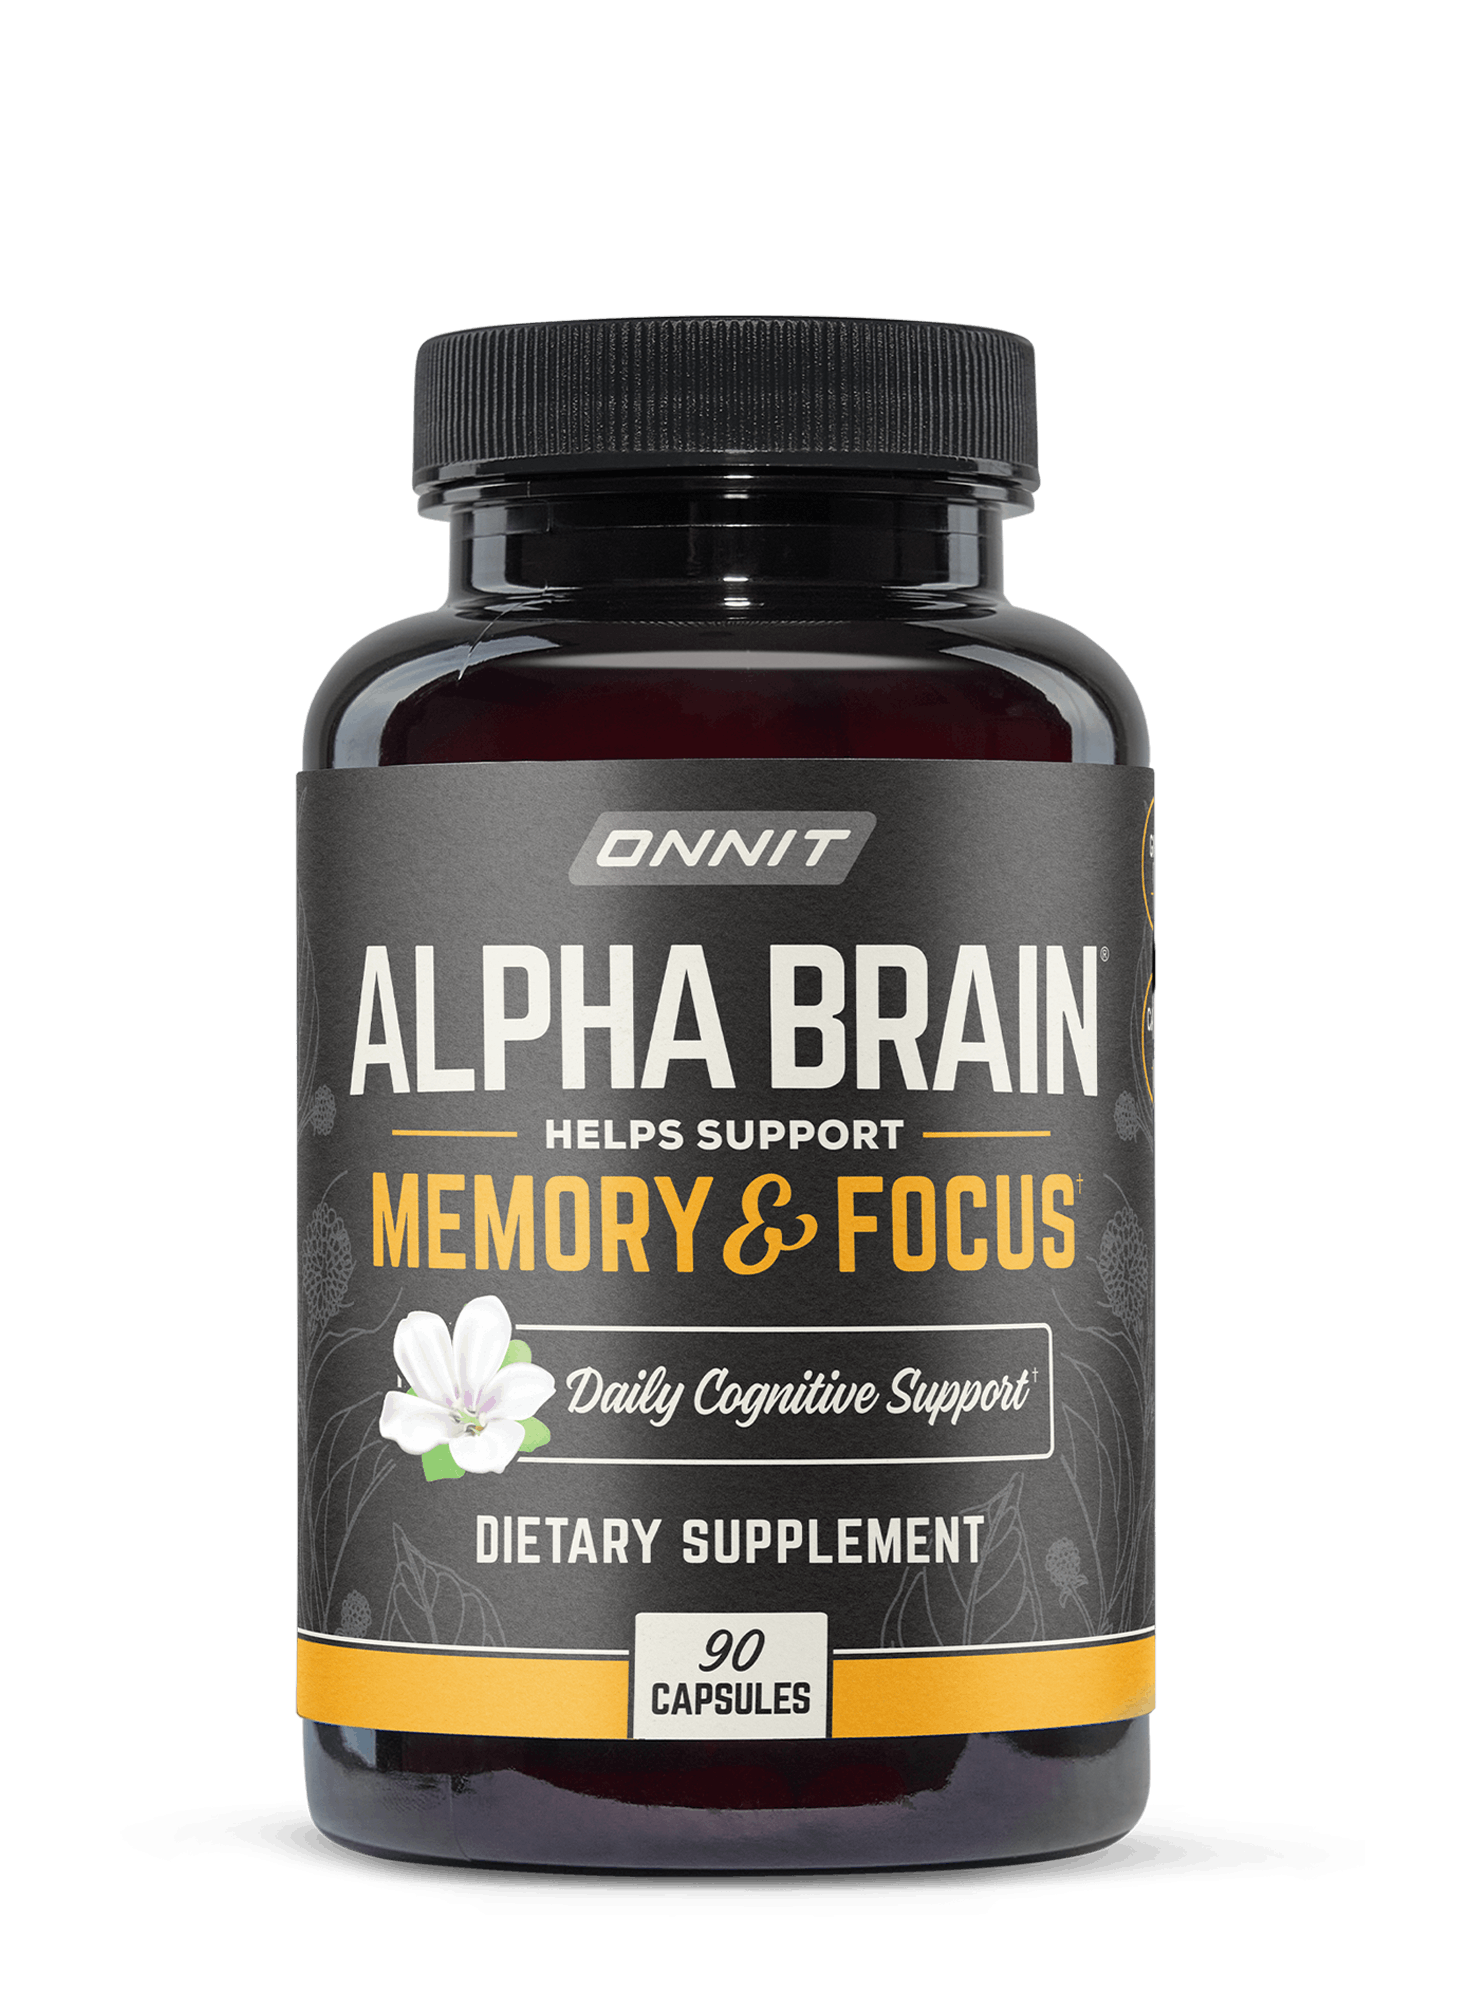 onnit alpha brain